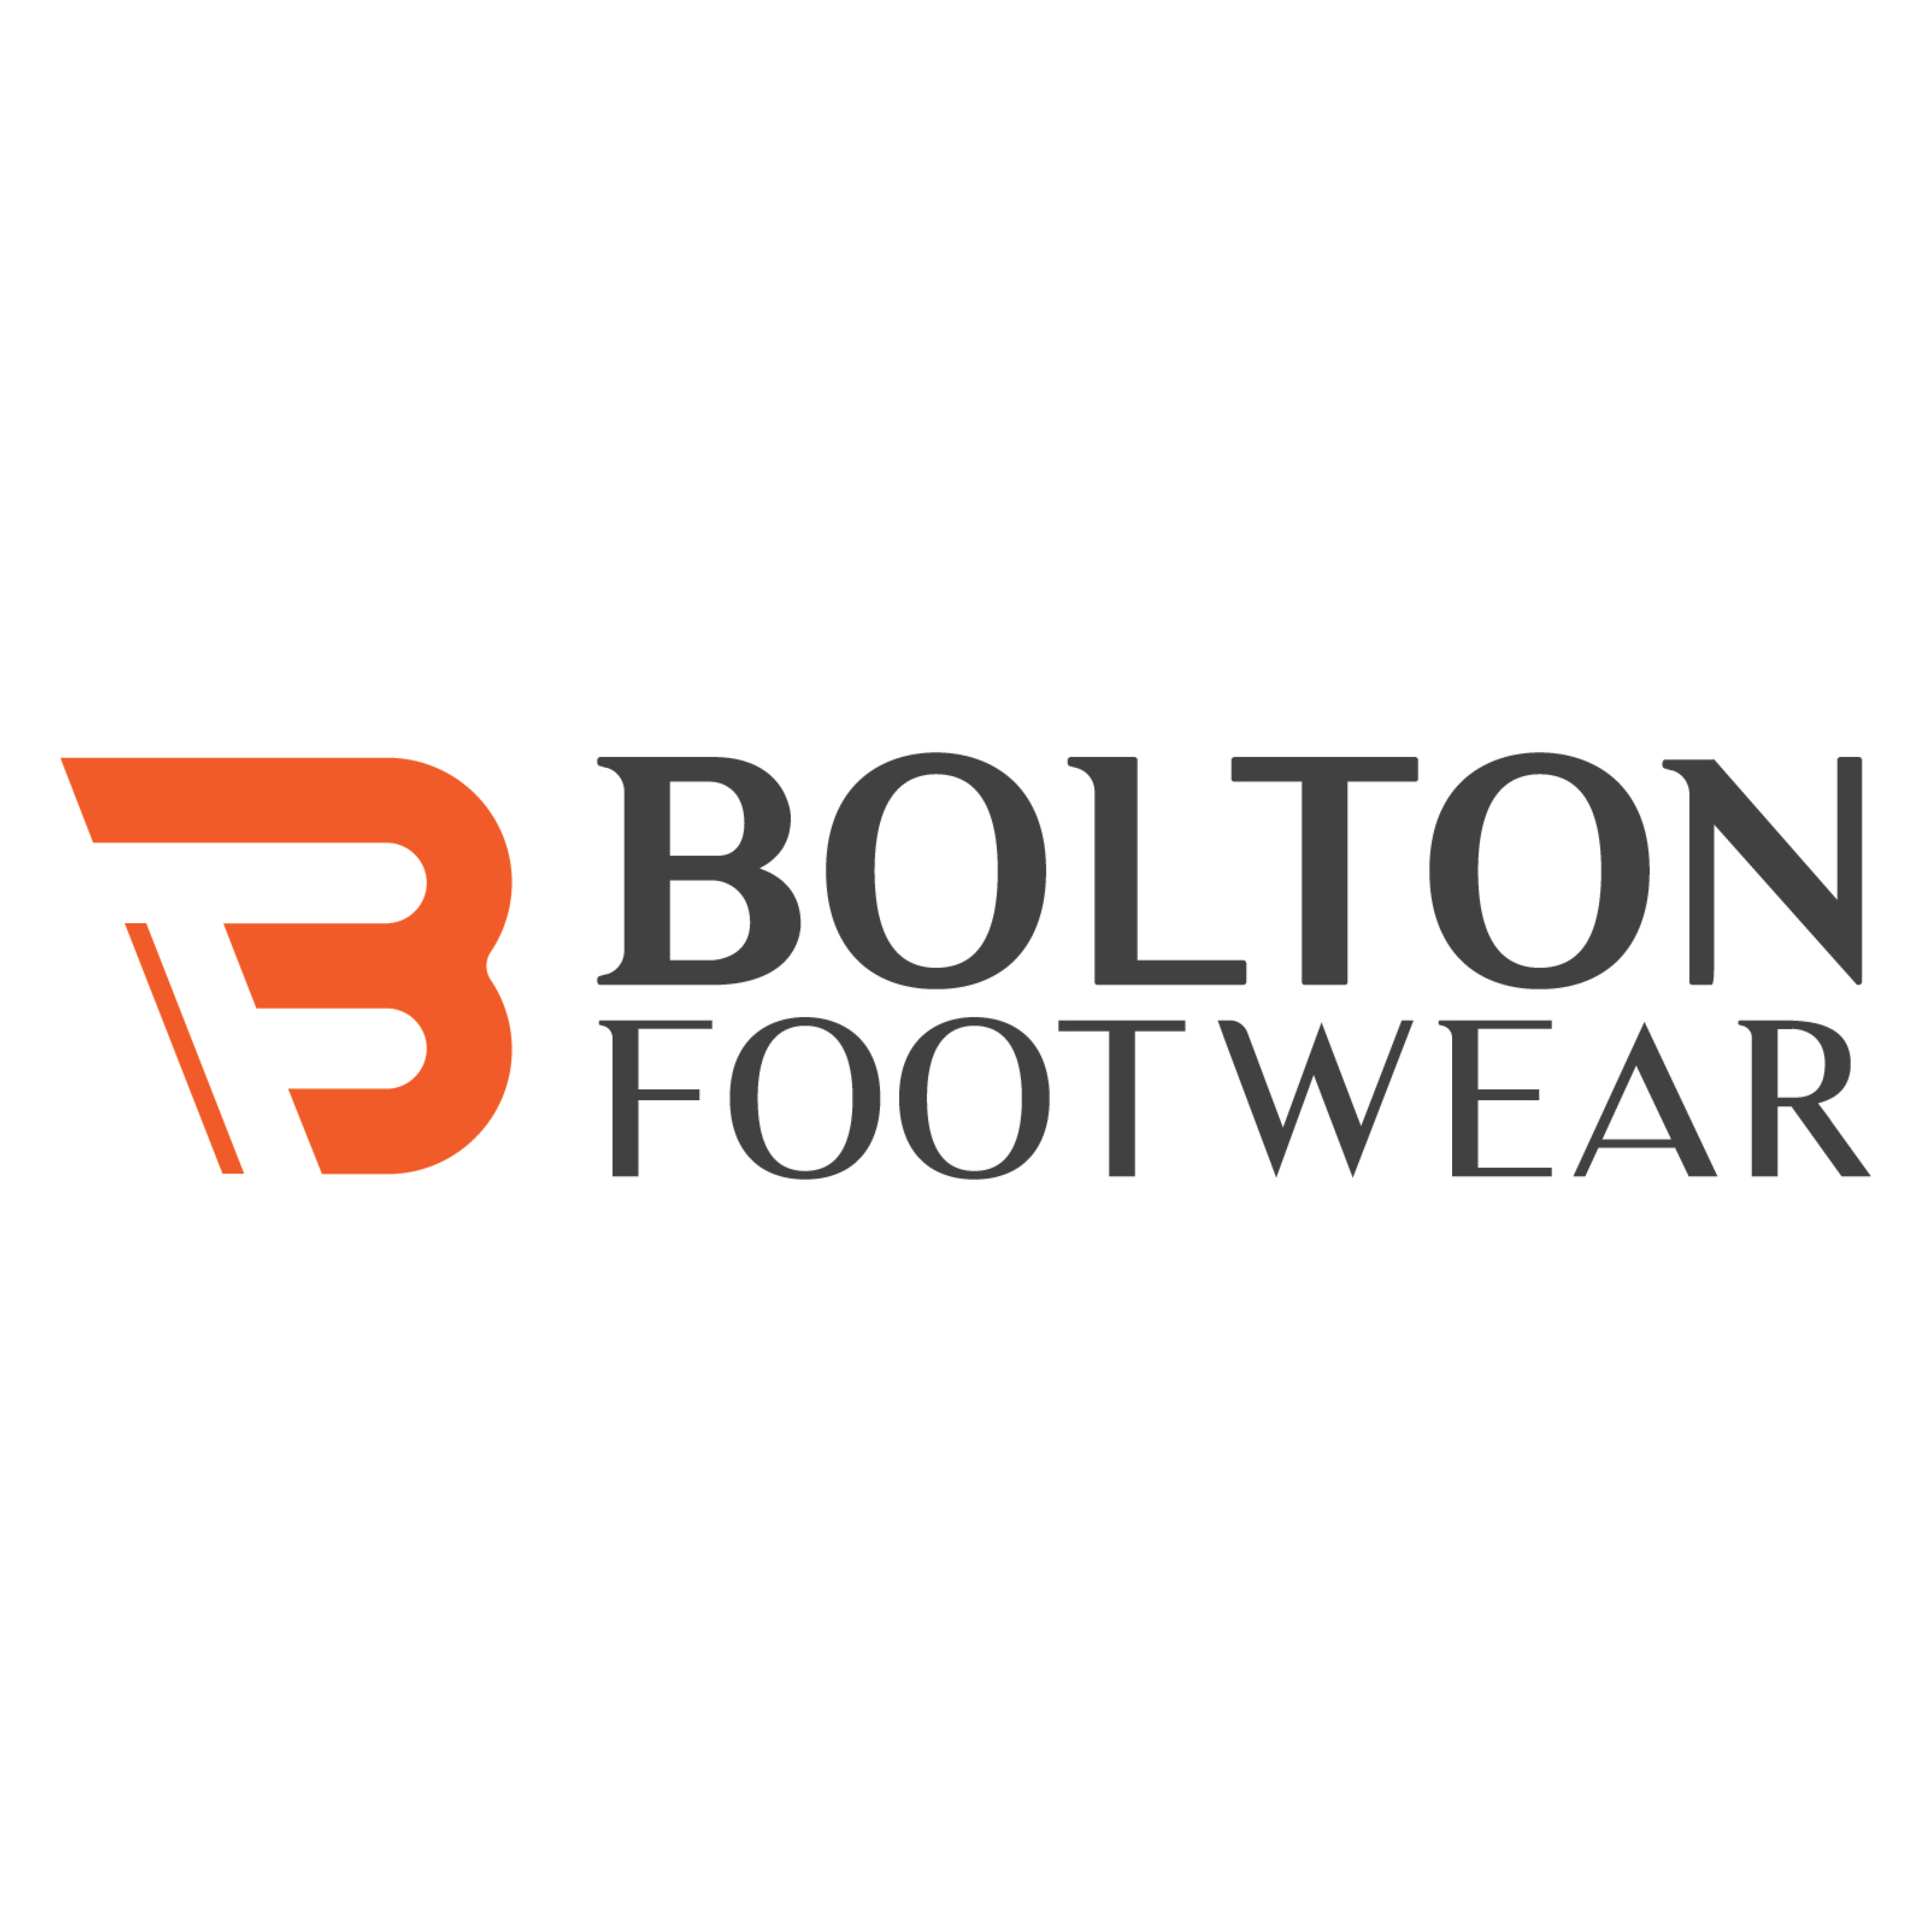 Bolton Footwear Logo - 1000X1000px High RES